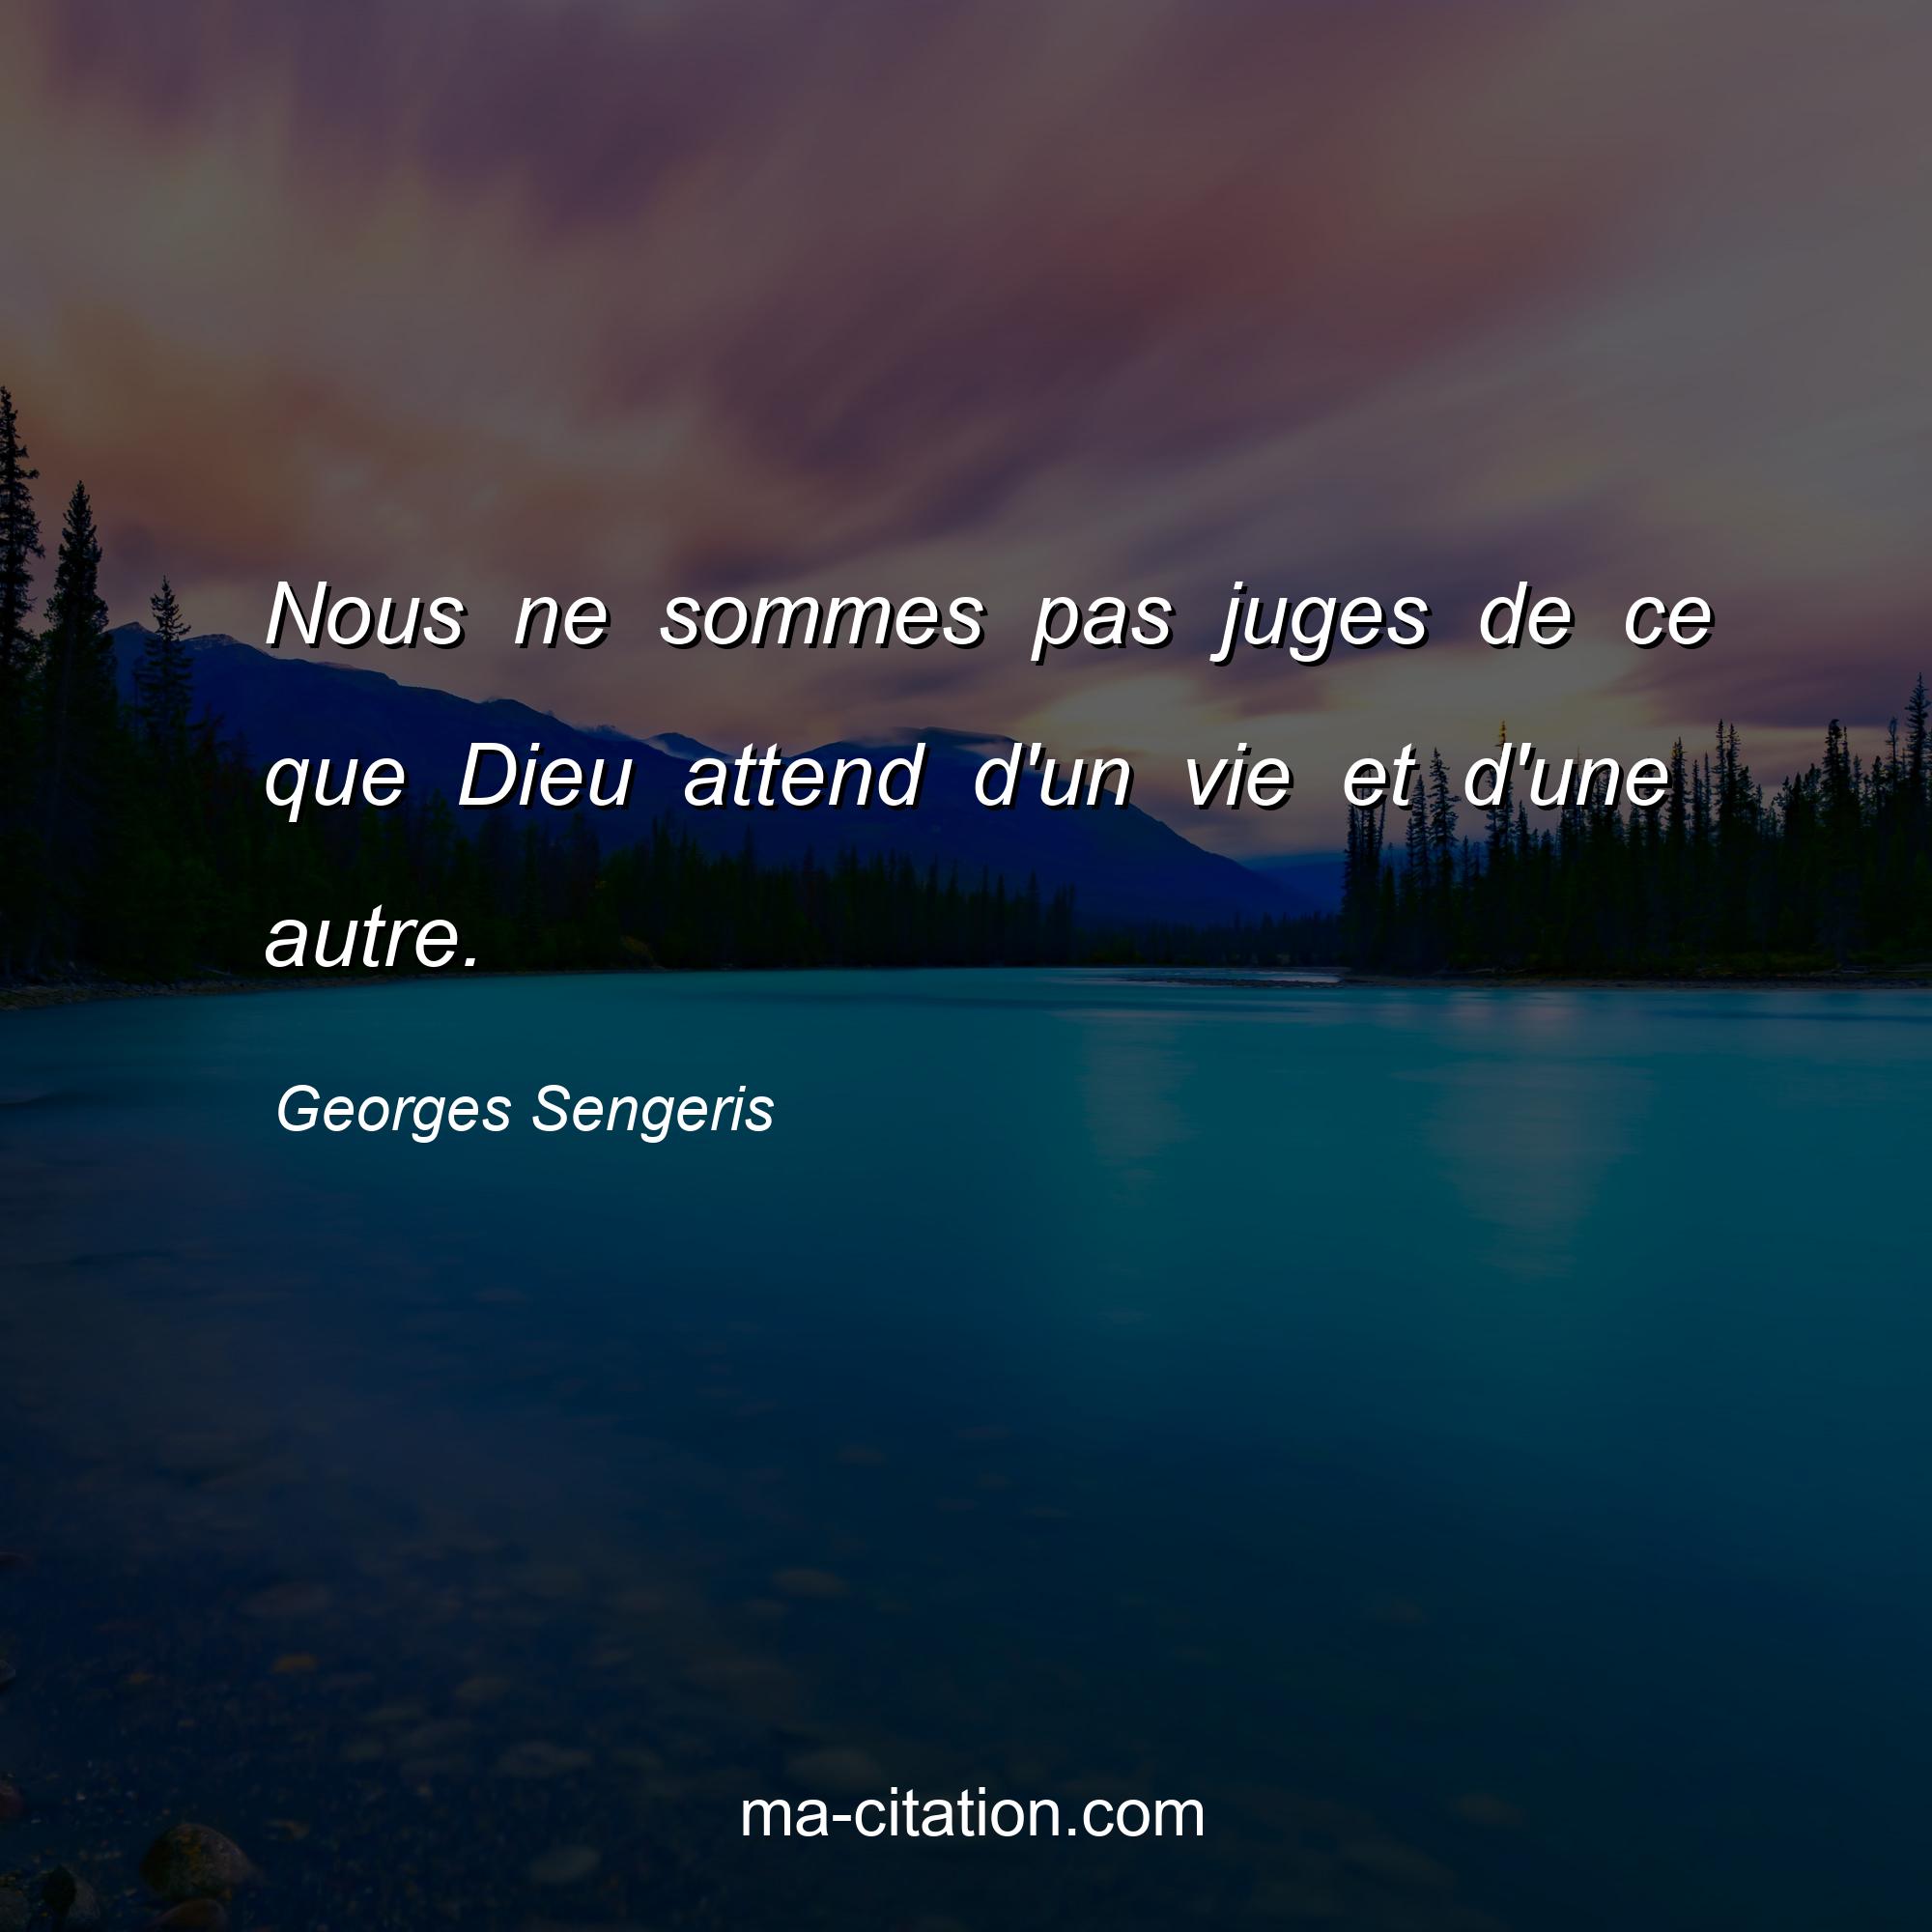 Georges Sengeris : Nous ne sommes pas juges de ce que Dieu attend d'un vie et d'une autre.